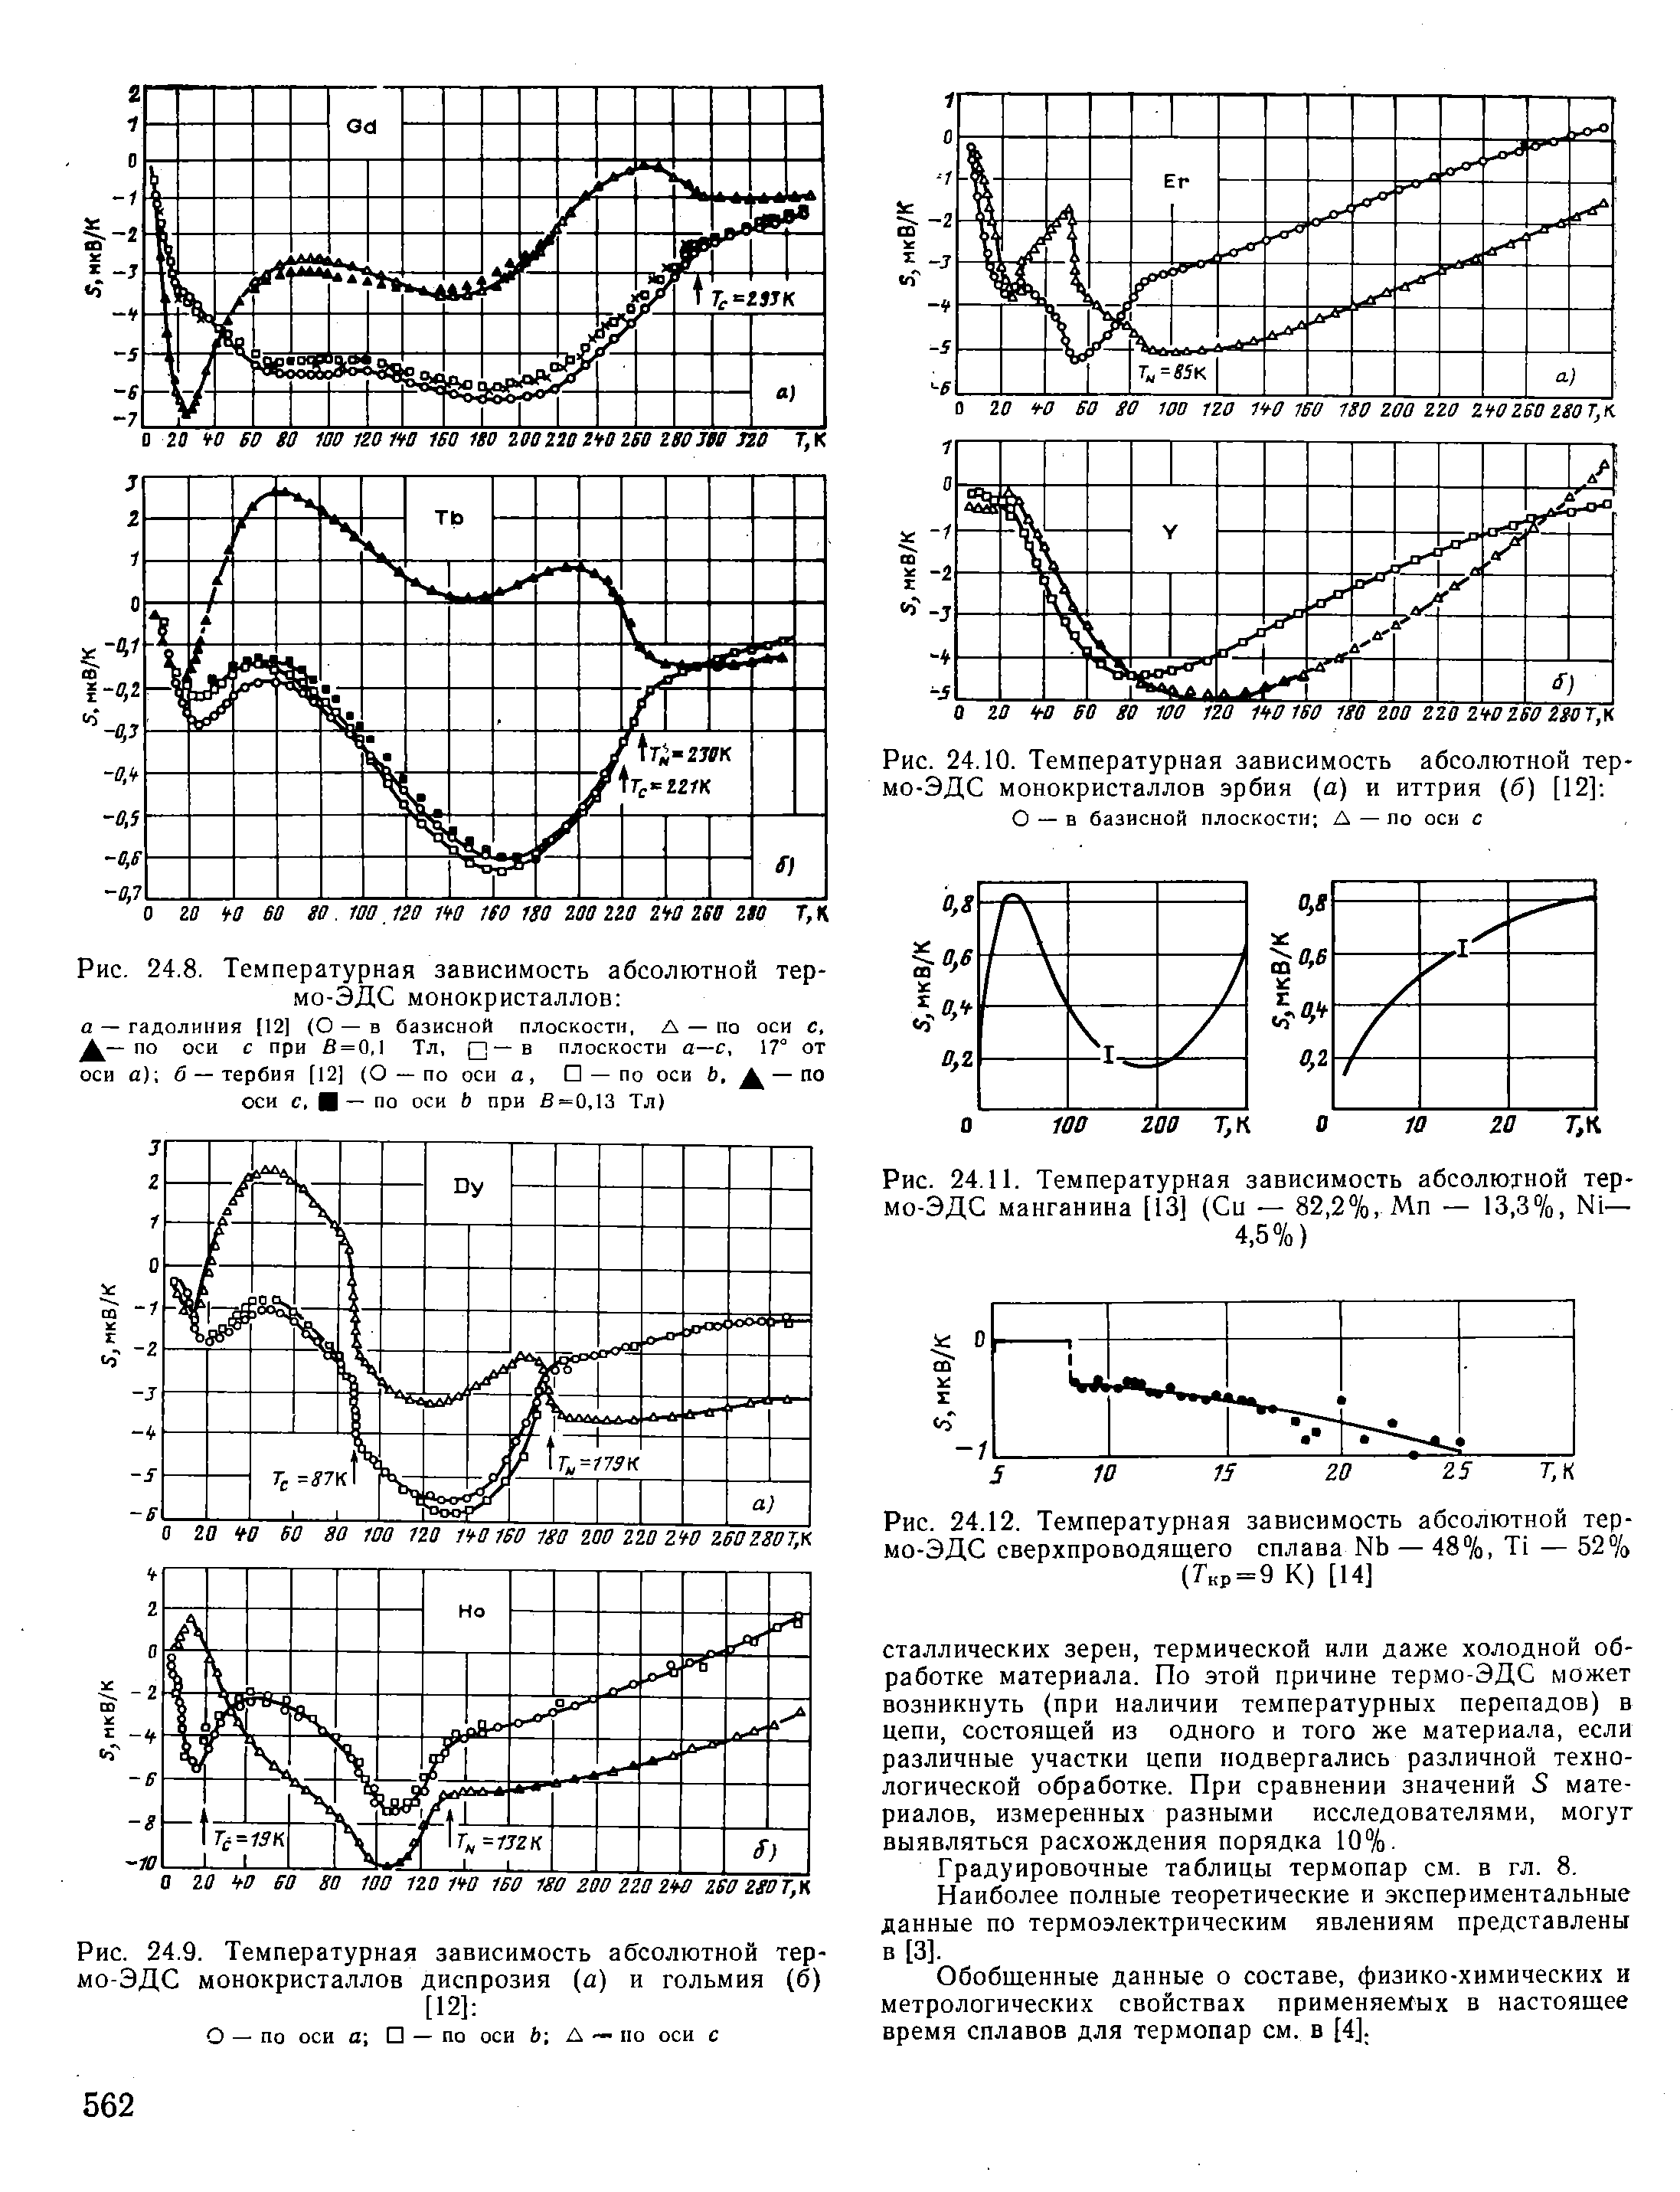 Рис. 24.10. <a href="/info/191882">Температурная зависимость</a> абсолютной тер-мо-ЭДС монокристаллов эрбия (а) и иттрия (б) [12] 